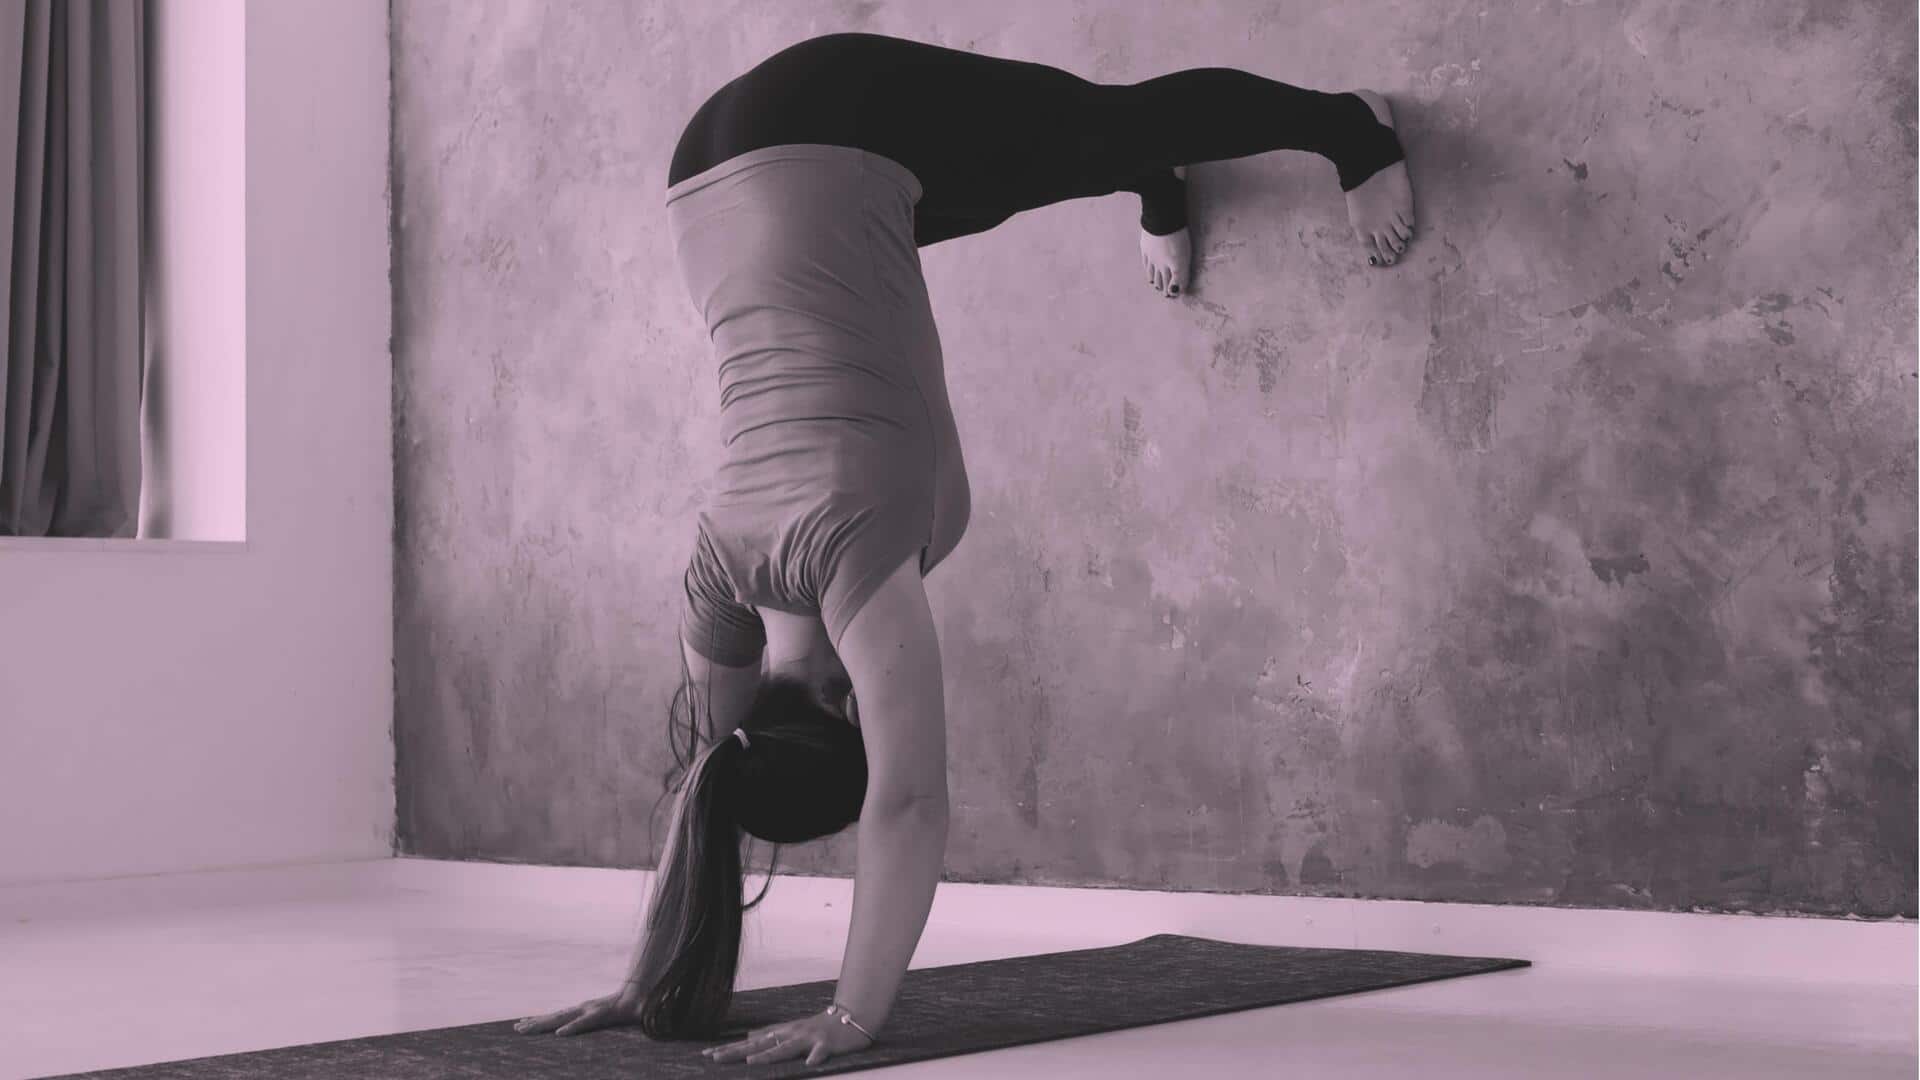 दीवार के सहारे आसानी से किए जा सकते हैं ये 5 योगासन, जानिए अभ्यास का तरीका